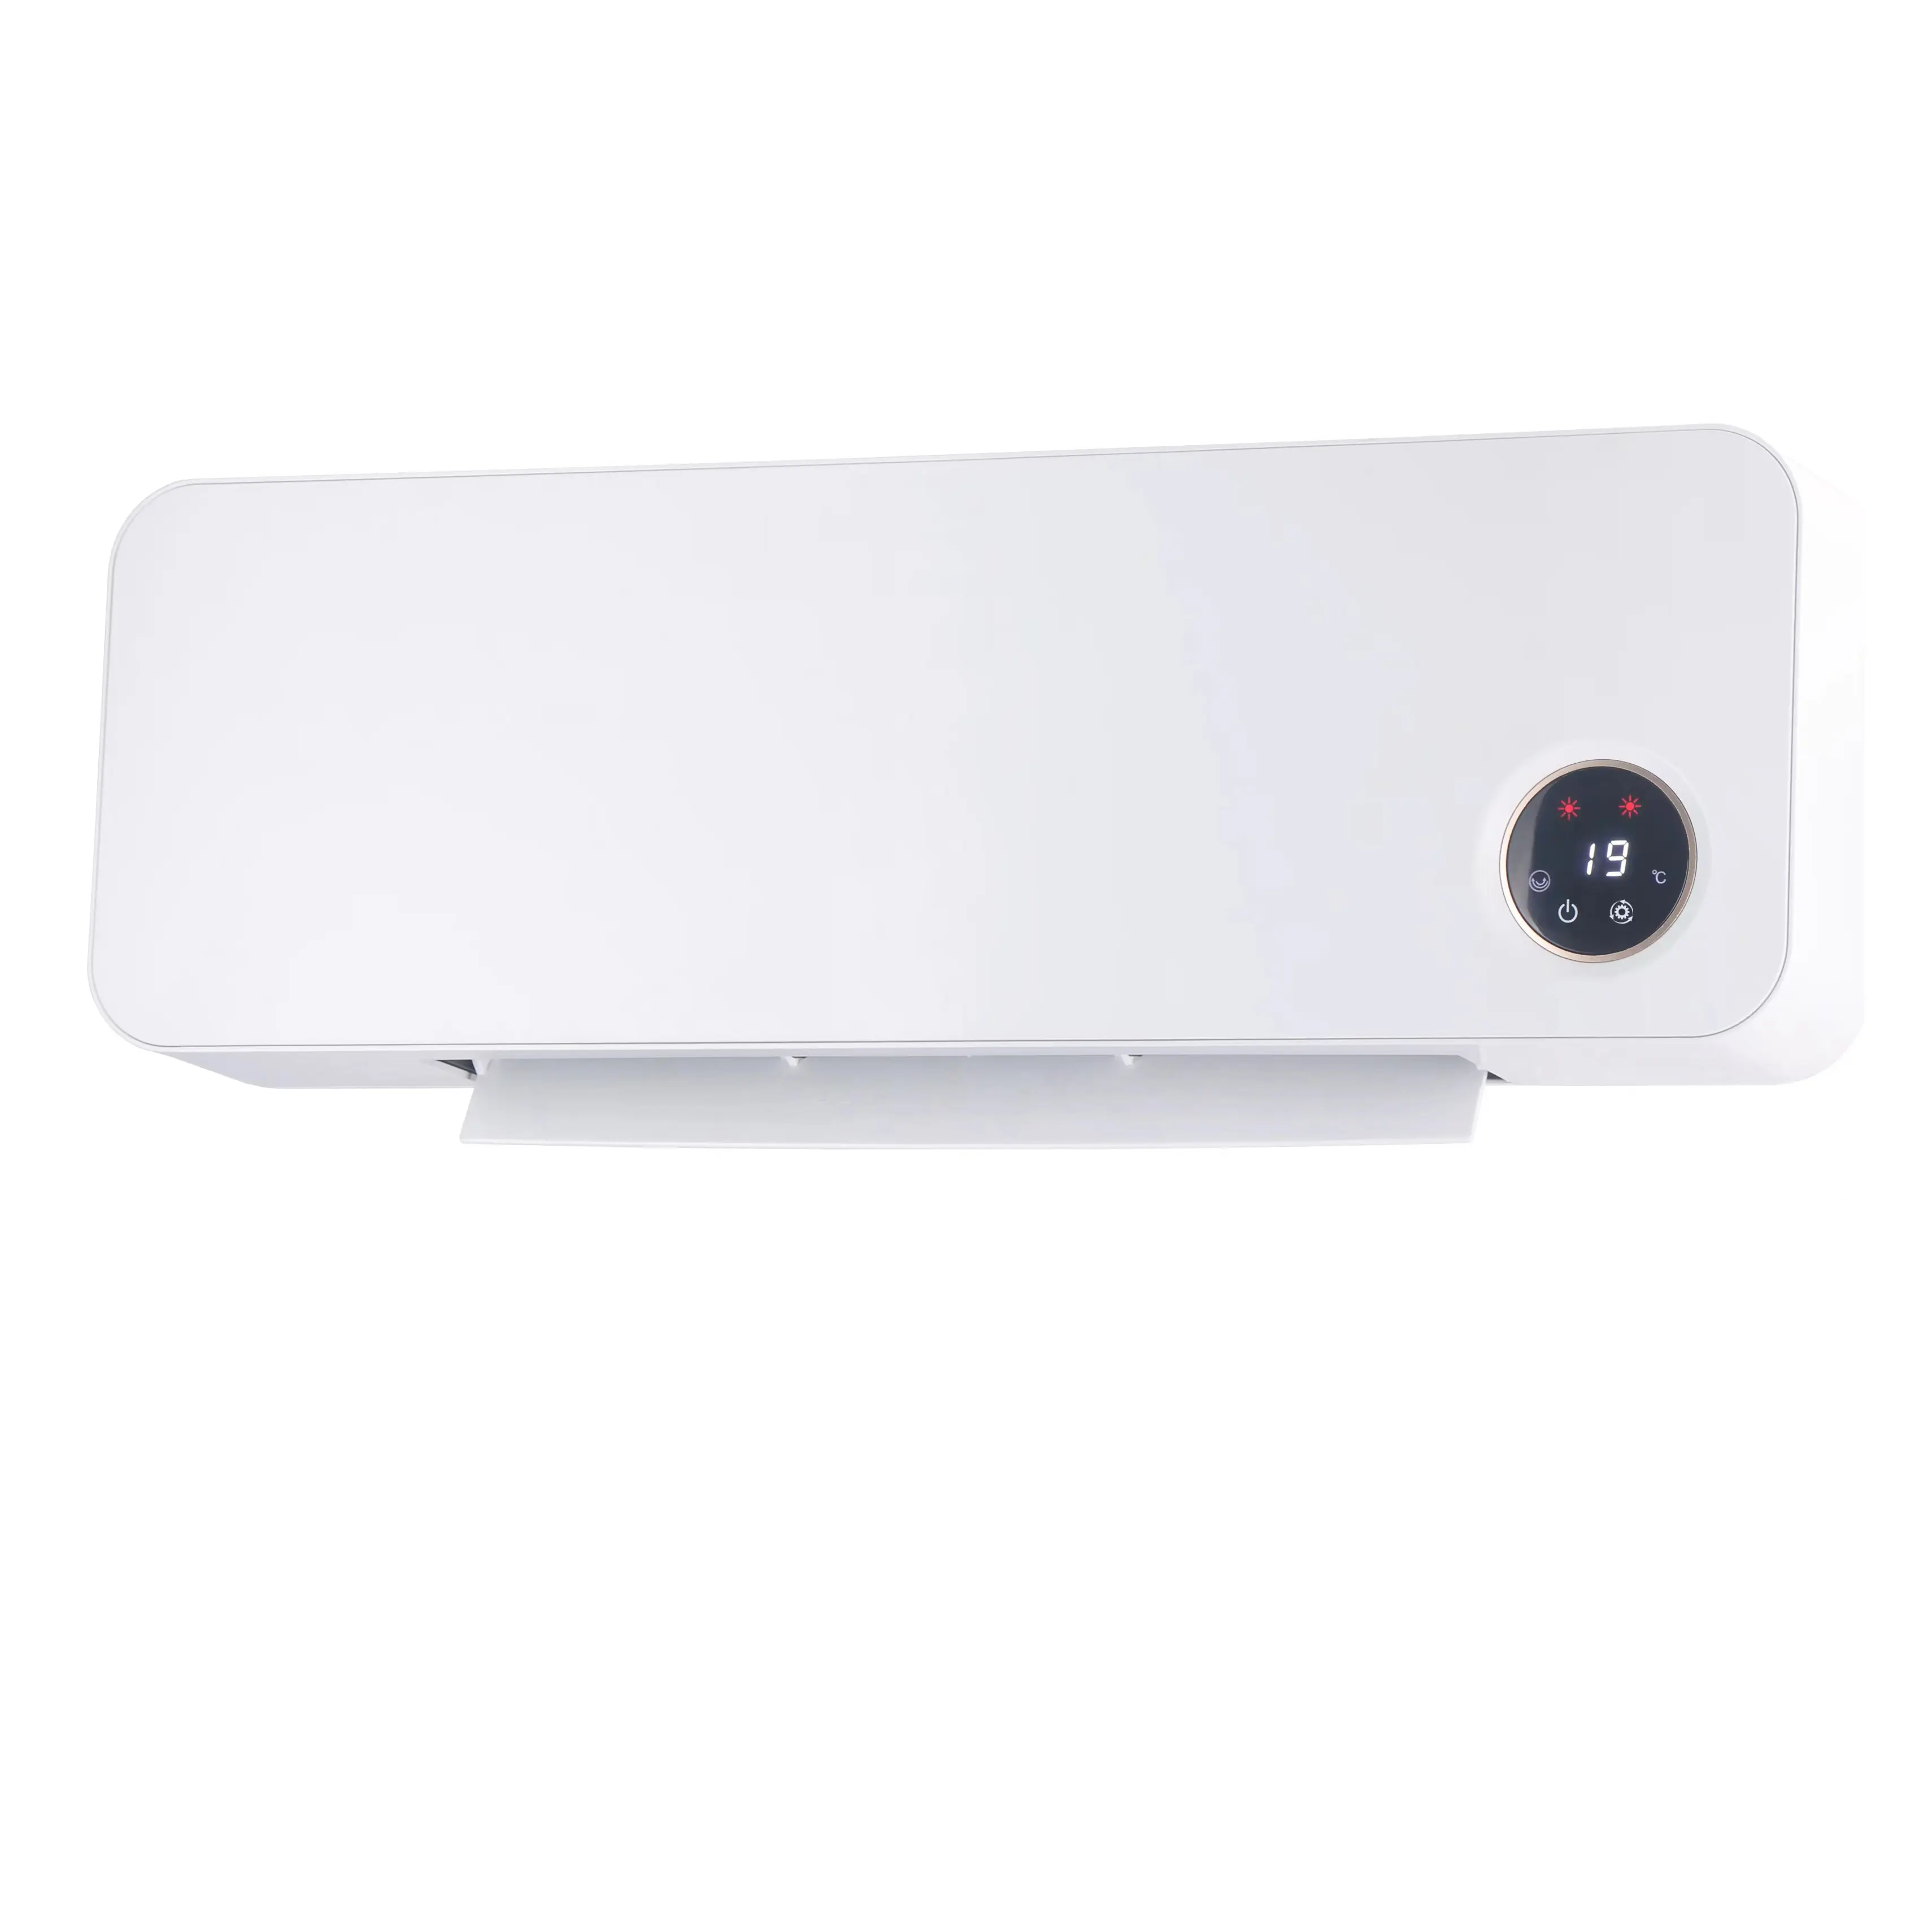 2000w riscaldatore a parete Plug In Ptc elettrico riscaldatore portatile soggiorno camera da letto scrivania inverno aria calda ventilatore camera riscaldatore